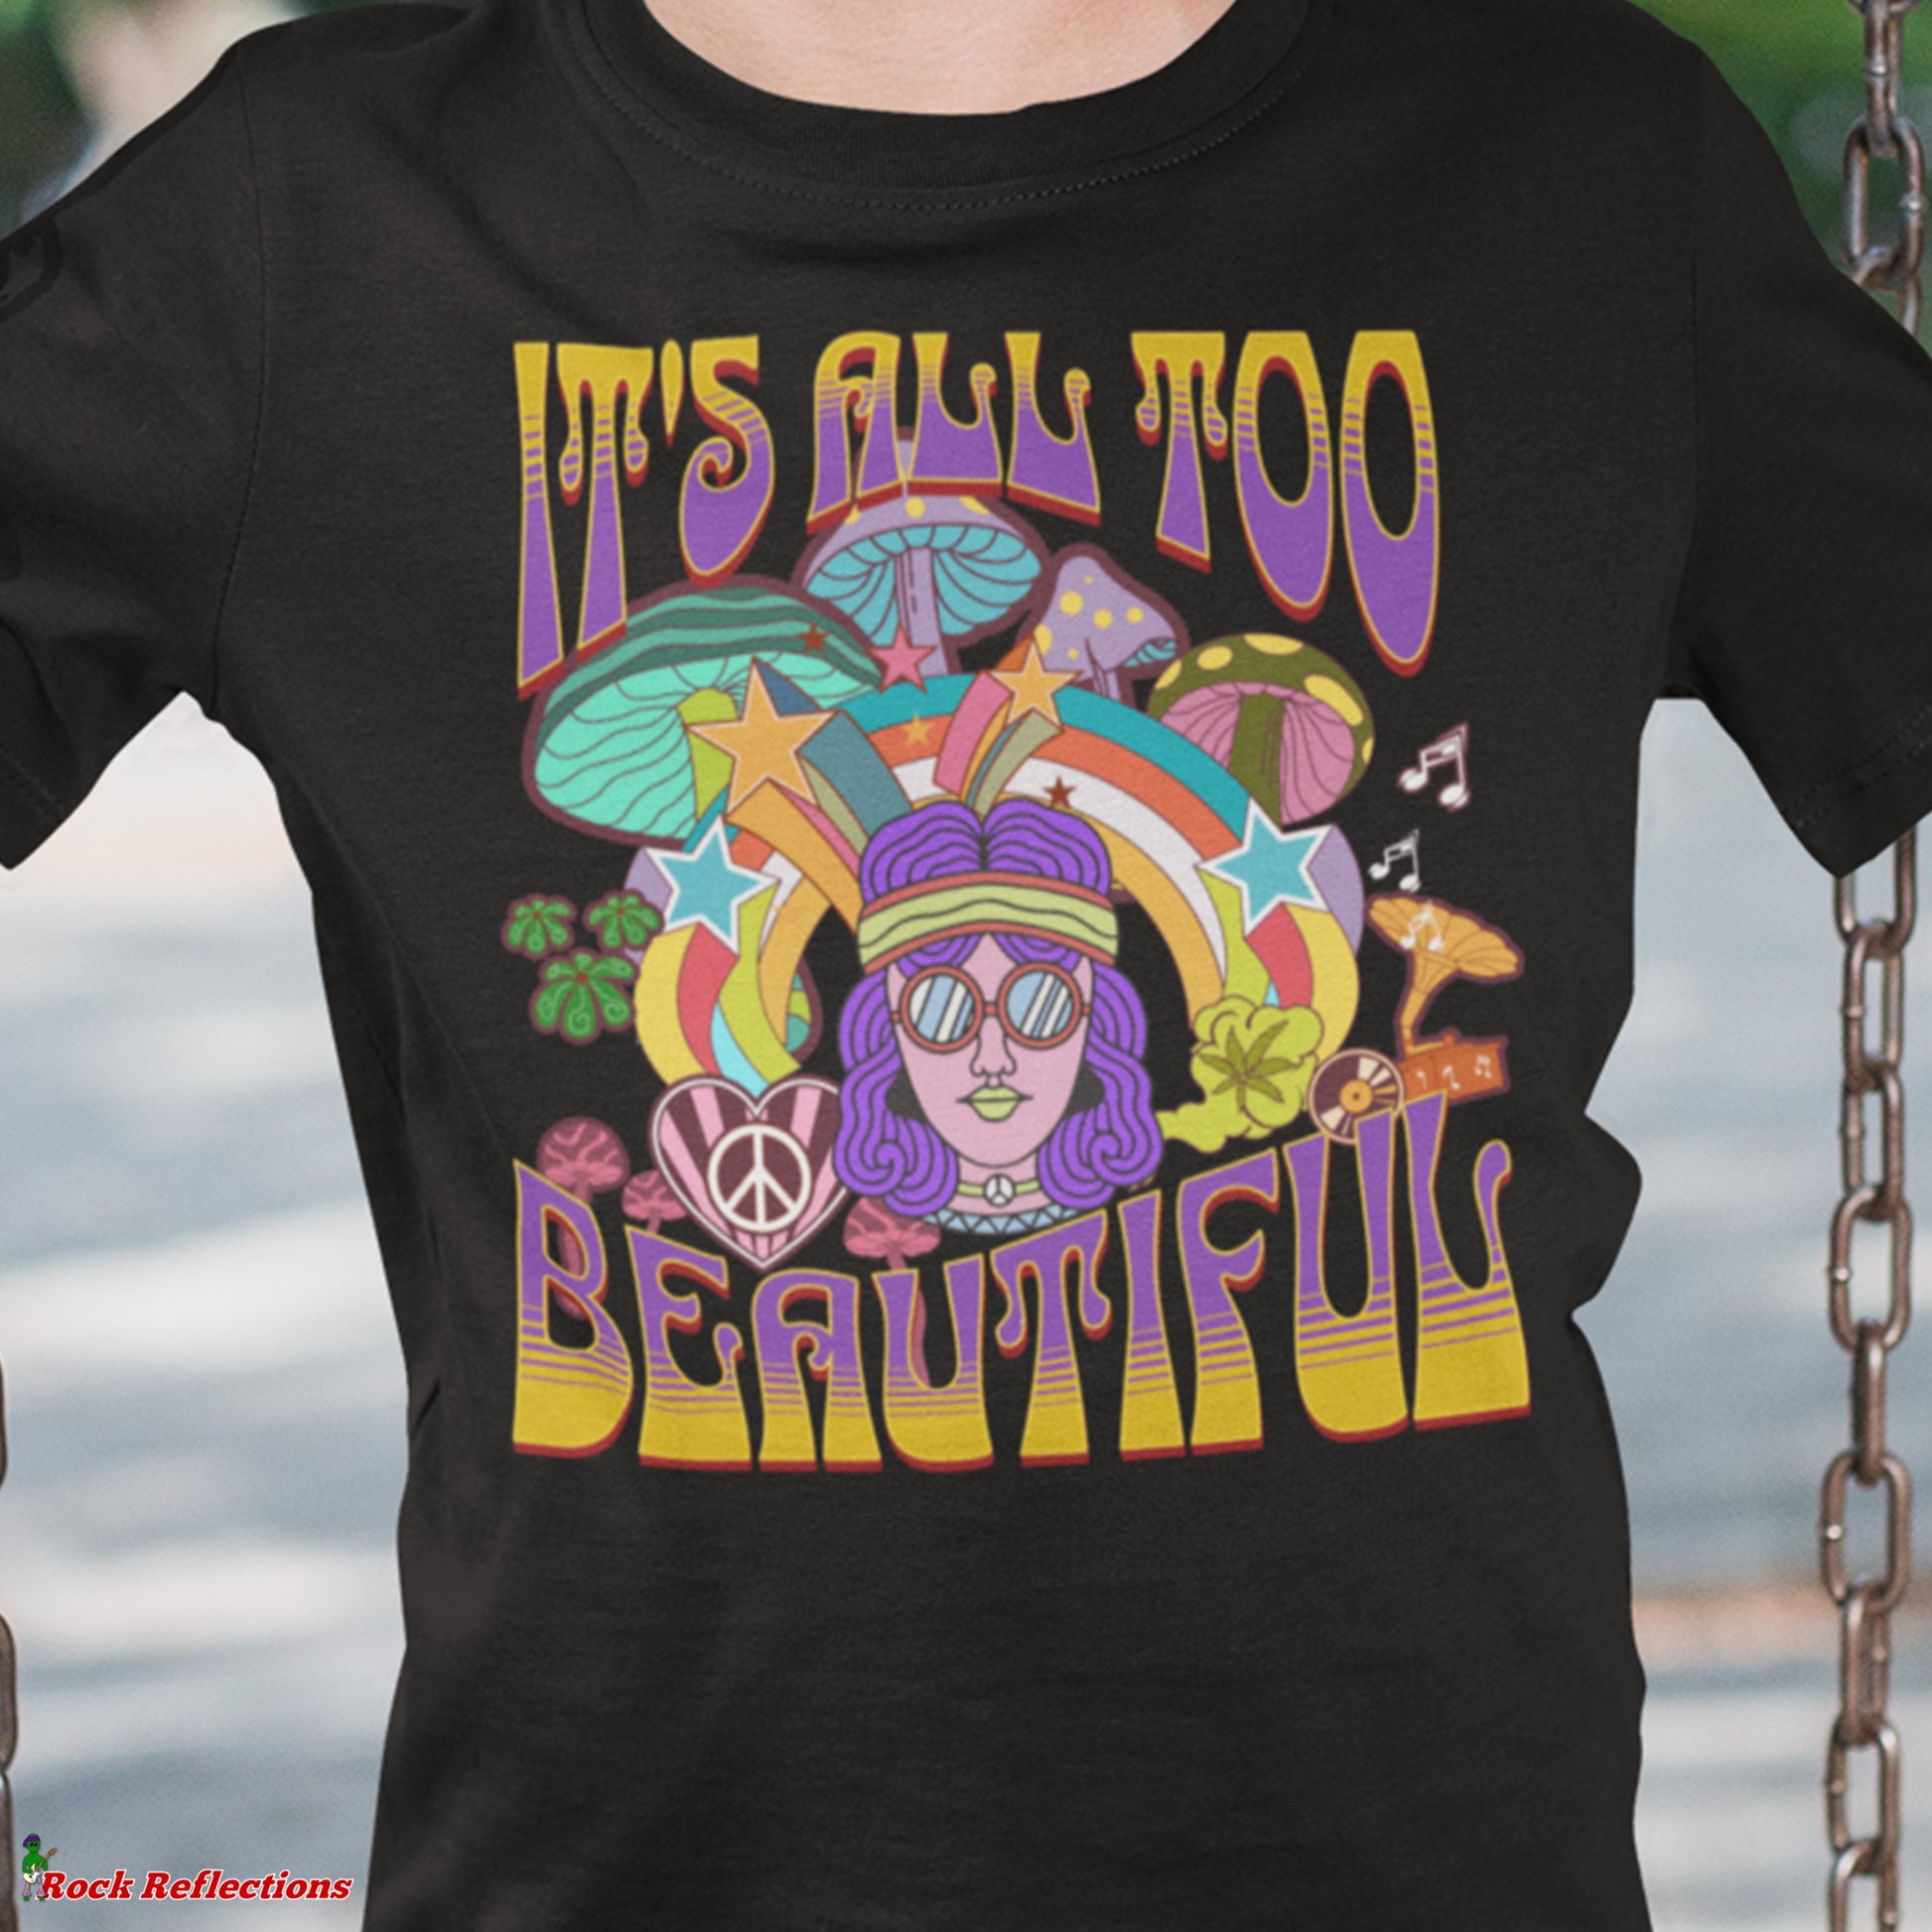 It's All Too Beautiful T-Shirt SPOD